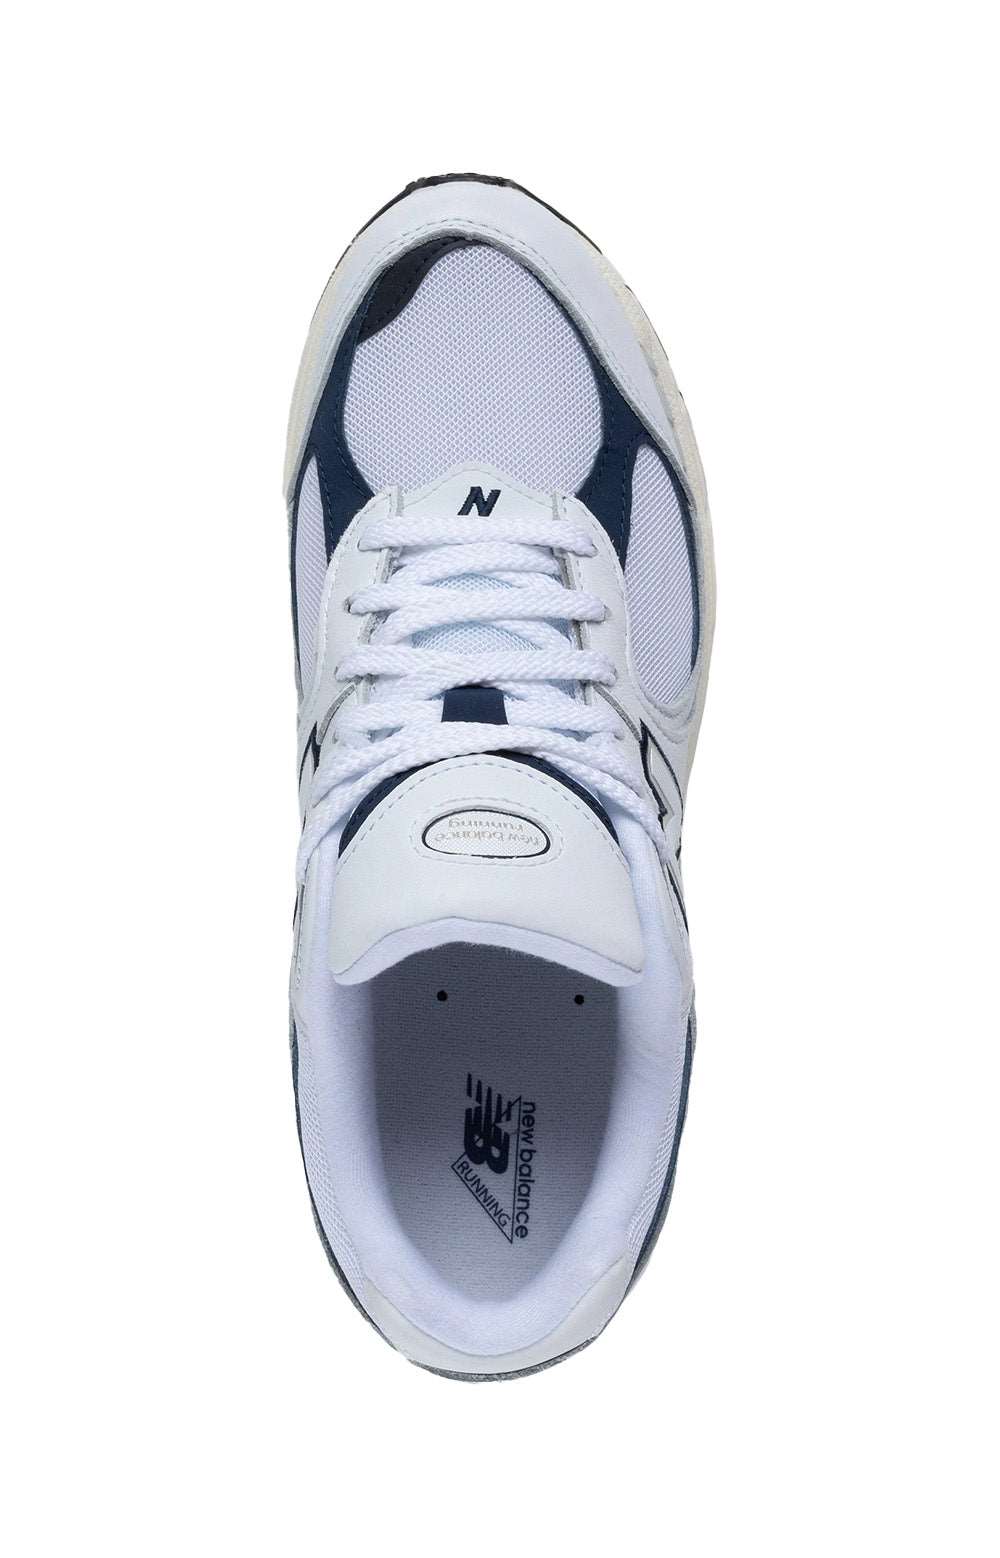 (M2002RHQ) 2002R Shoes - White/Natural Indigo